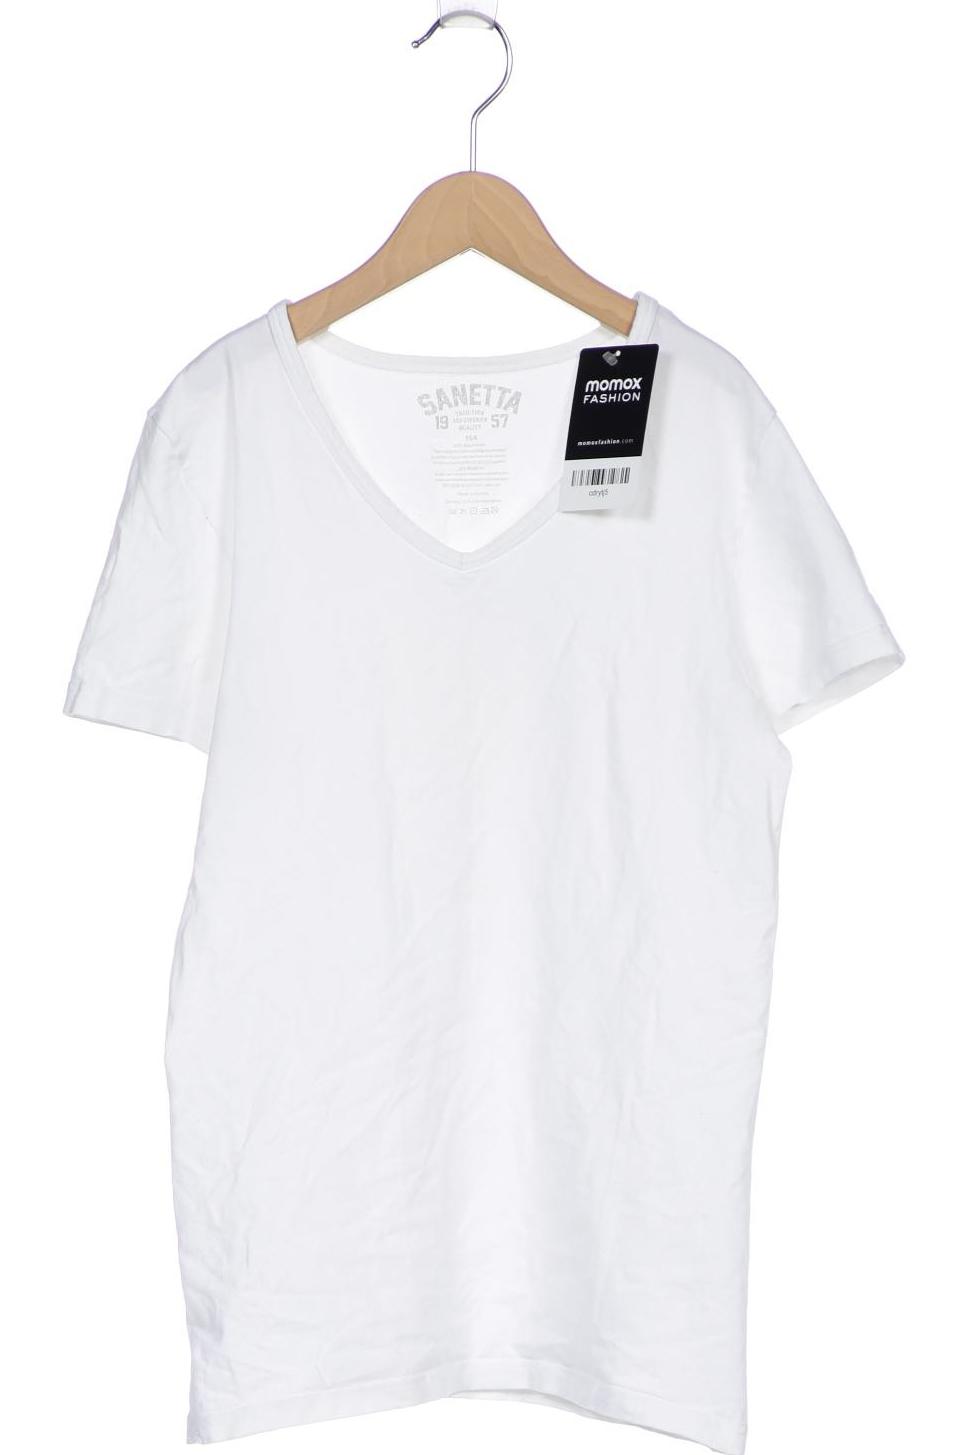 Sanetta Damen T-Shirt, weiß, Gr. 164 von Sanetta